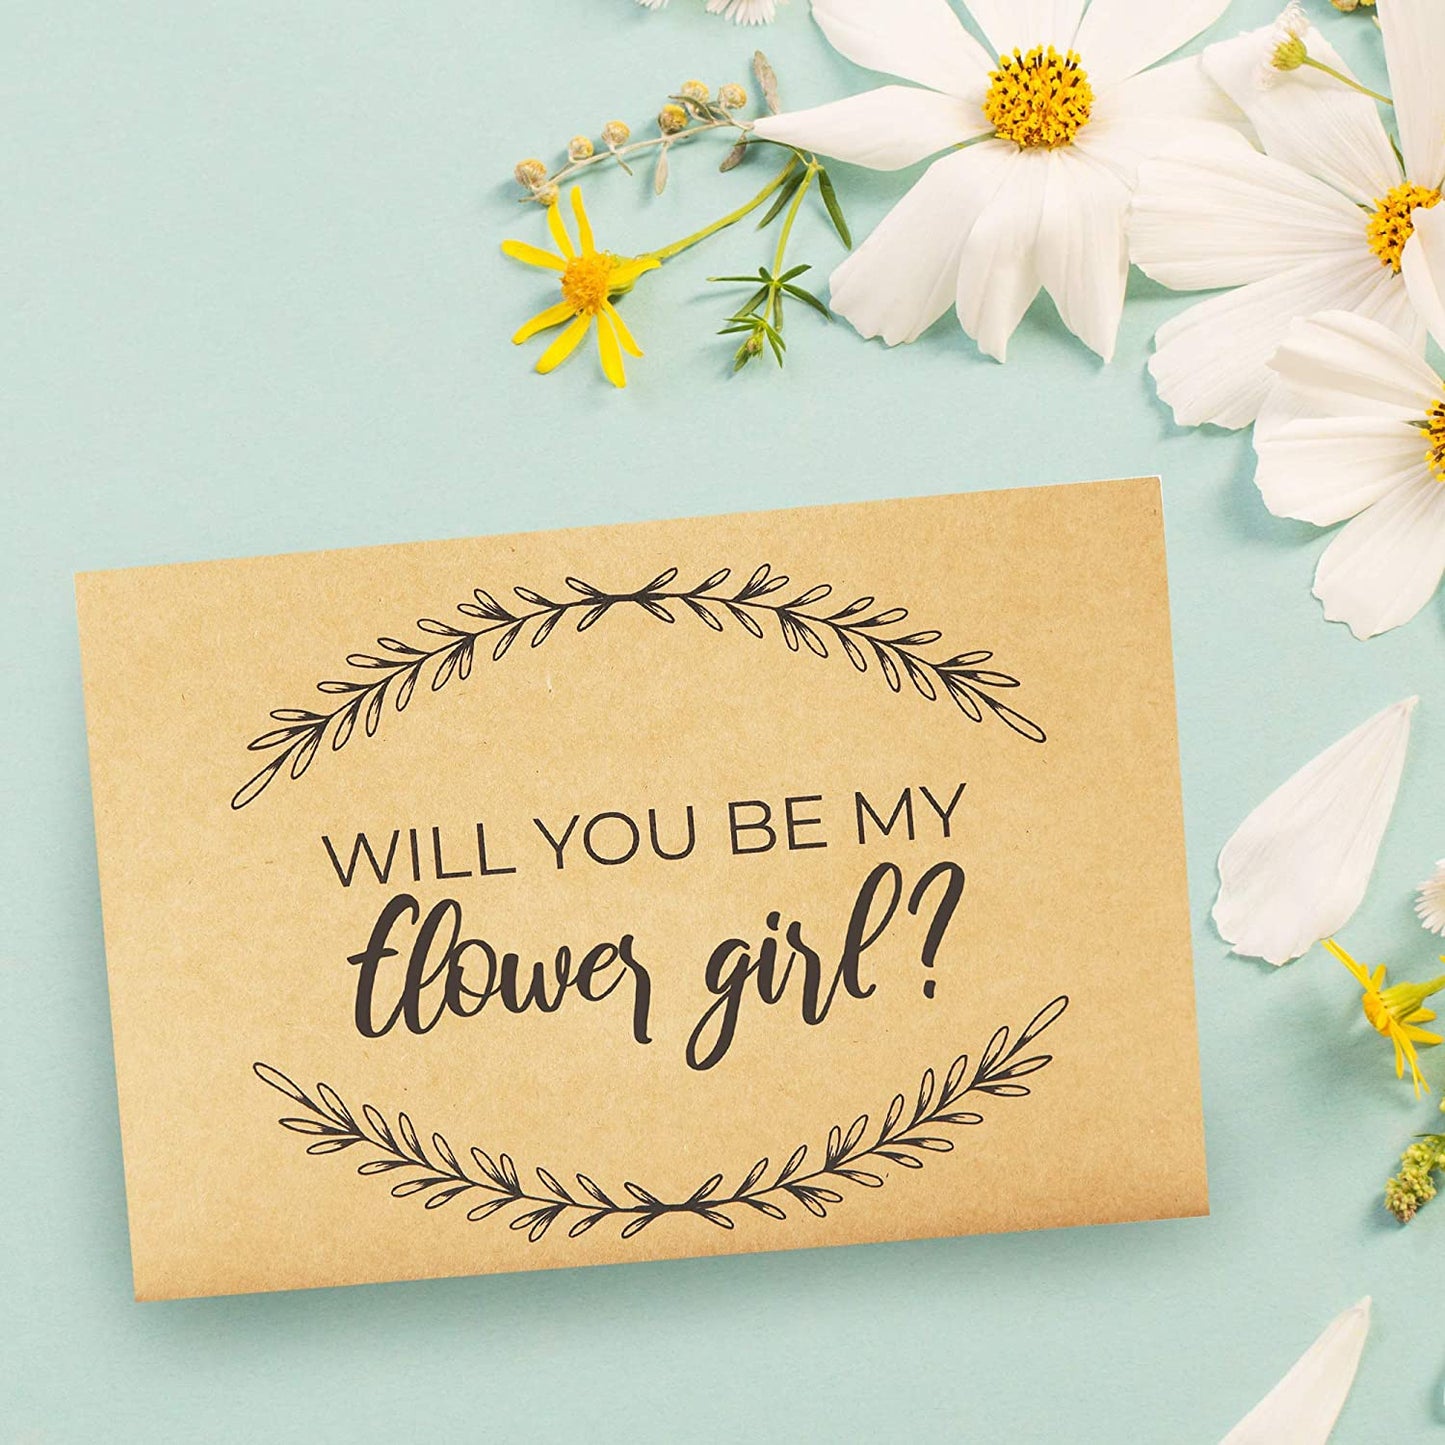 Flower Girl Proposal Box Sets (Set of 2)